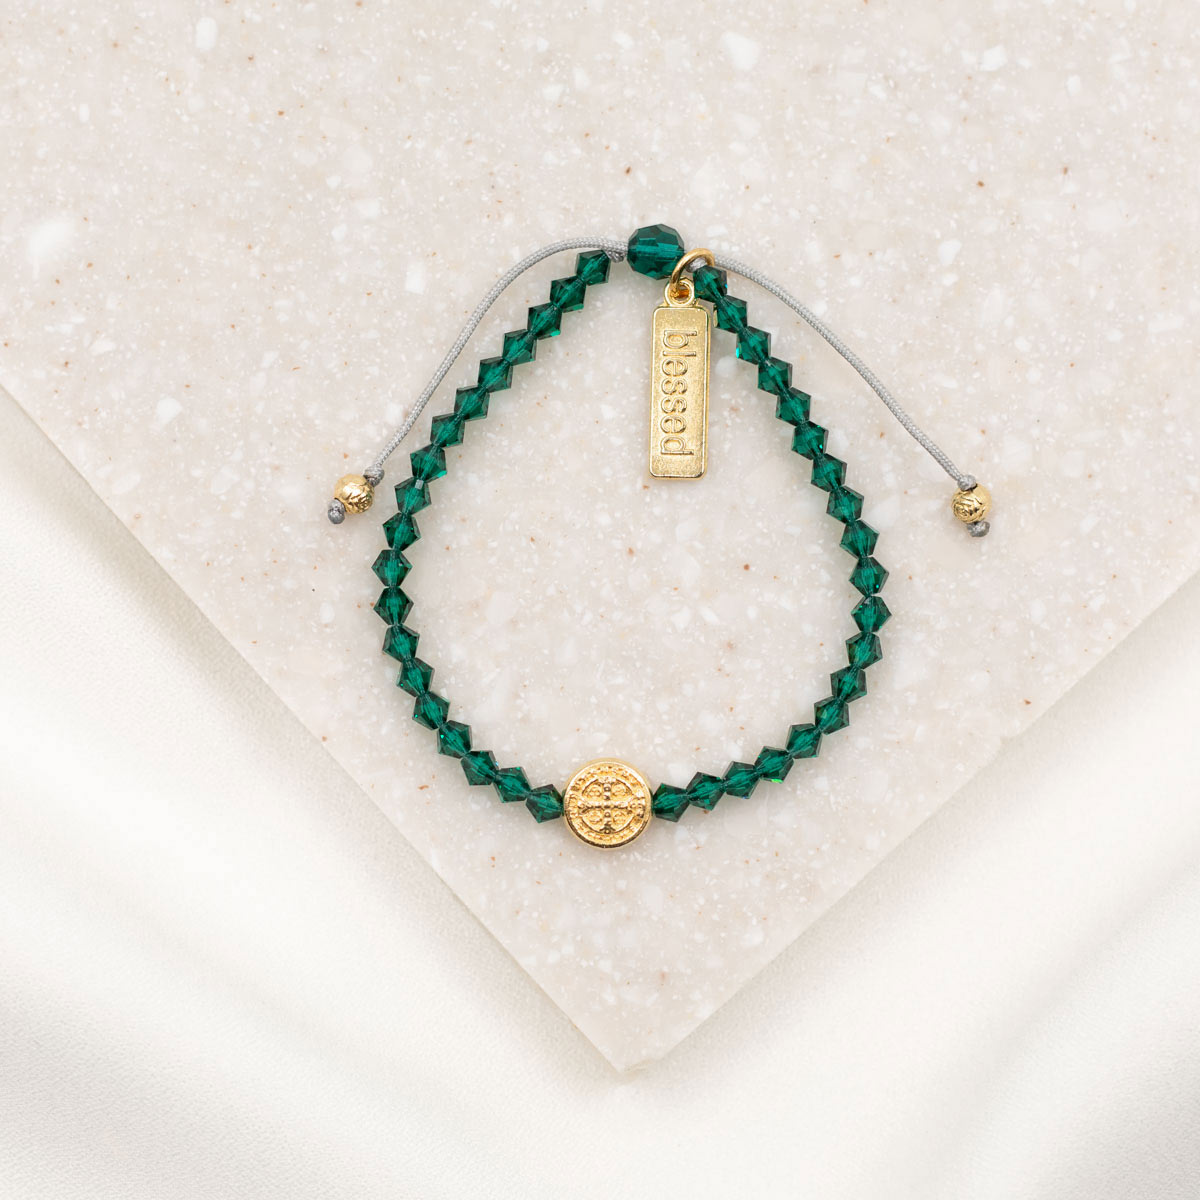 St. Patrick's Blessing Bracelet